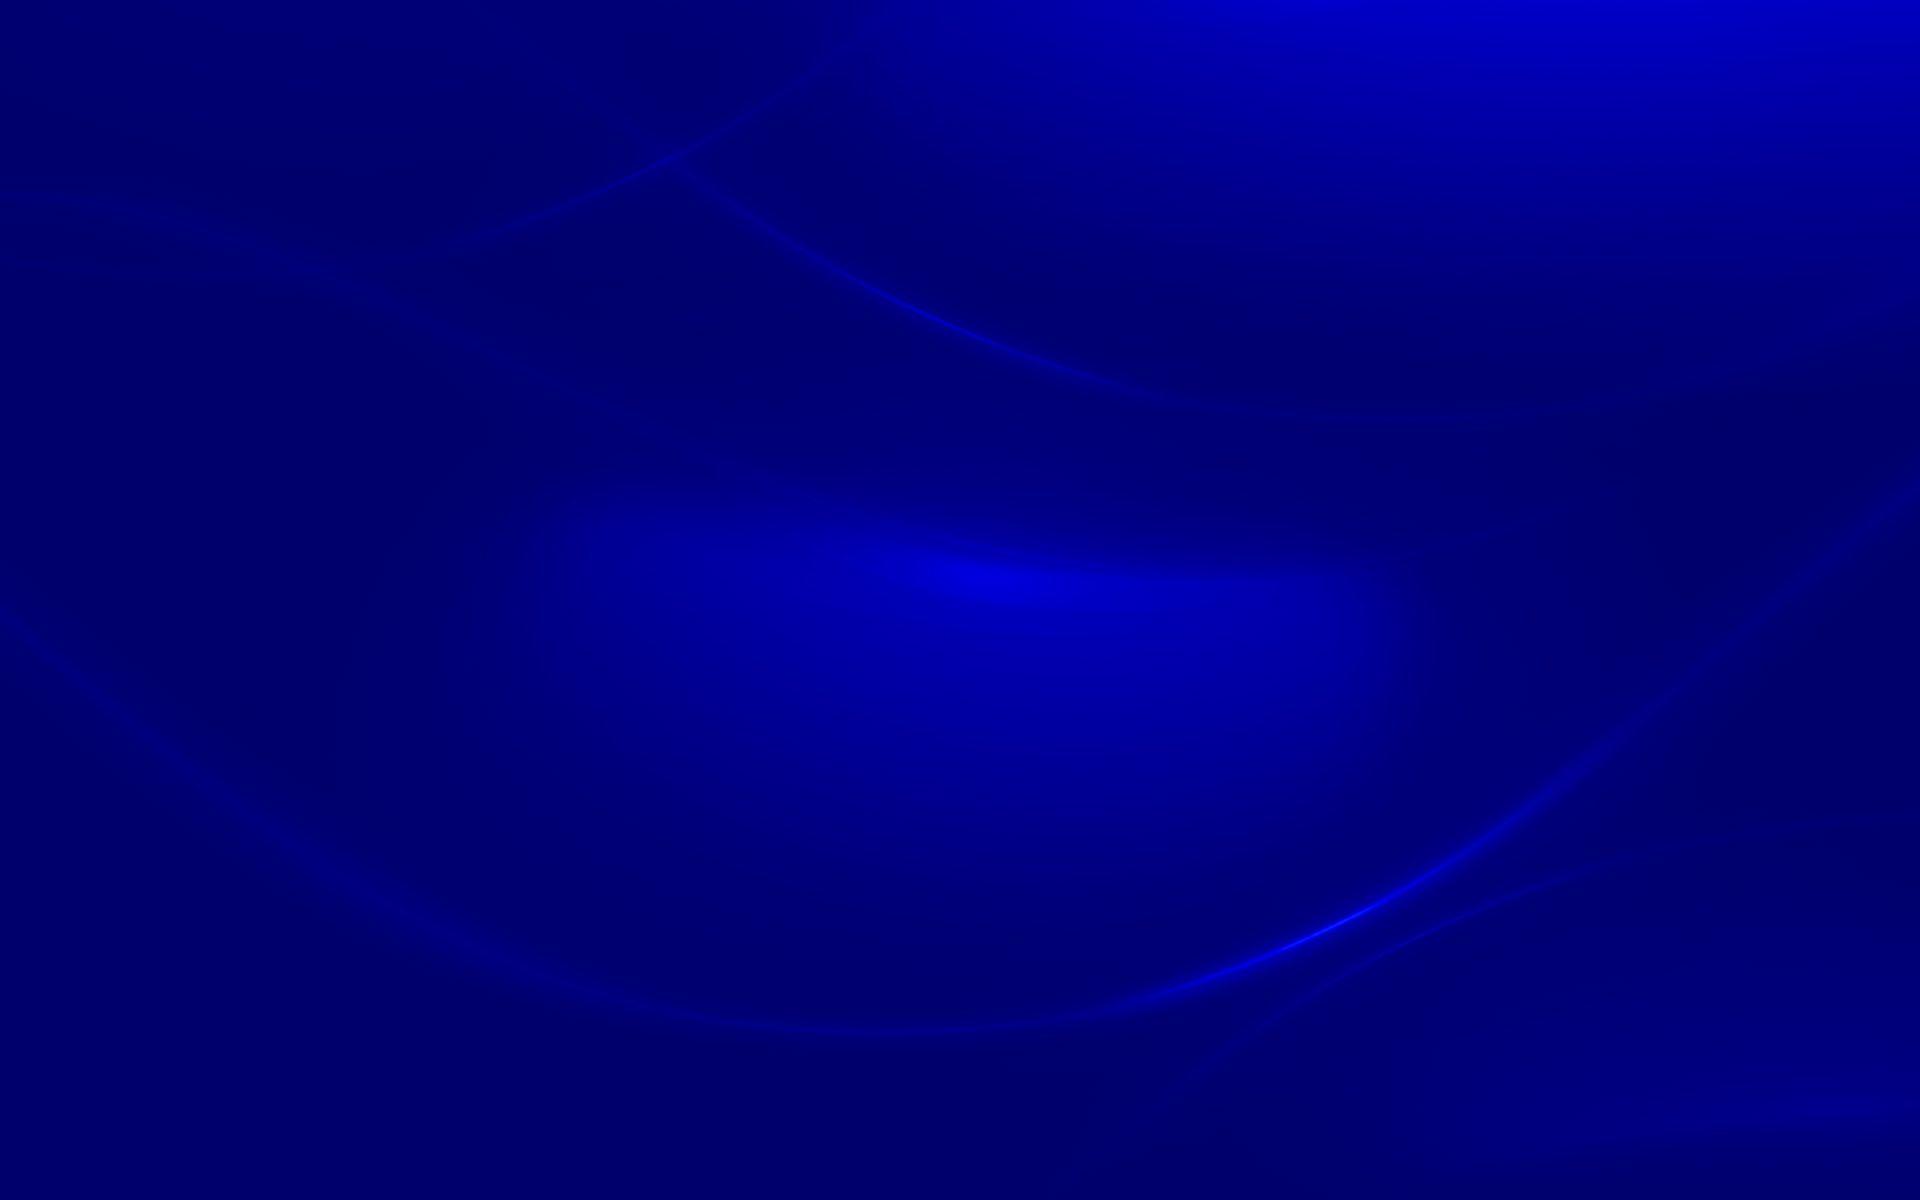 Tự hào chào đón bộ sưu tập hình nền Windows Blue Phone Wallpapers độc đáo với hình ảnh tuyệt đẹp và độ phân giải cao. Tích hợp những góc nhìn độc đáo, cung cấp cho người dùng sự lựa chọn đa dạng và trải nghiệm tuyệt vời trên thiết bị của mình.